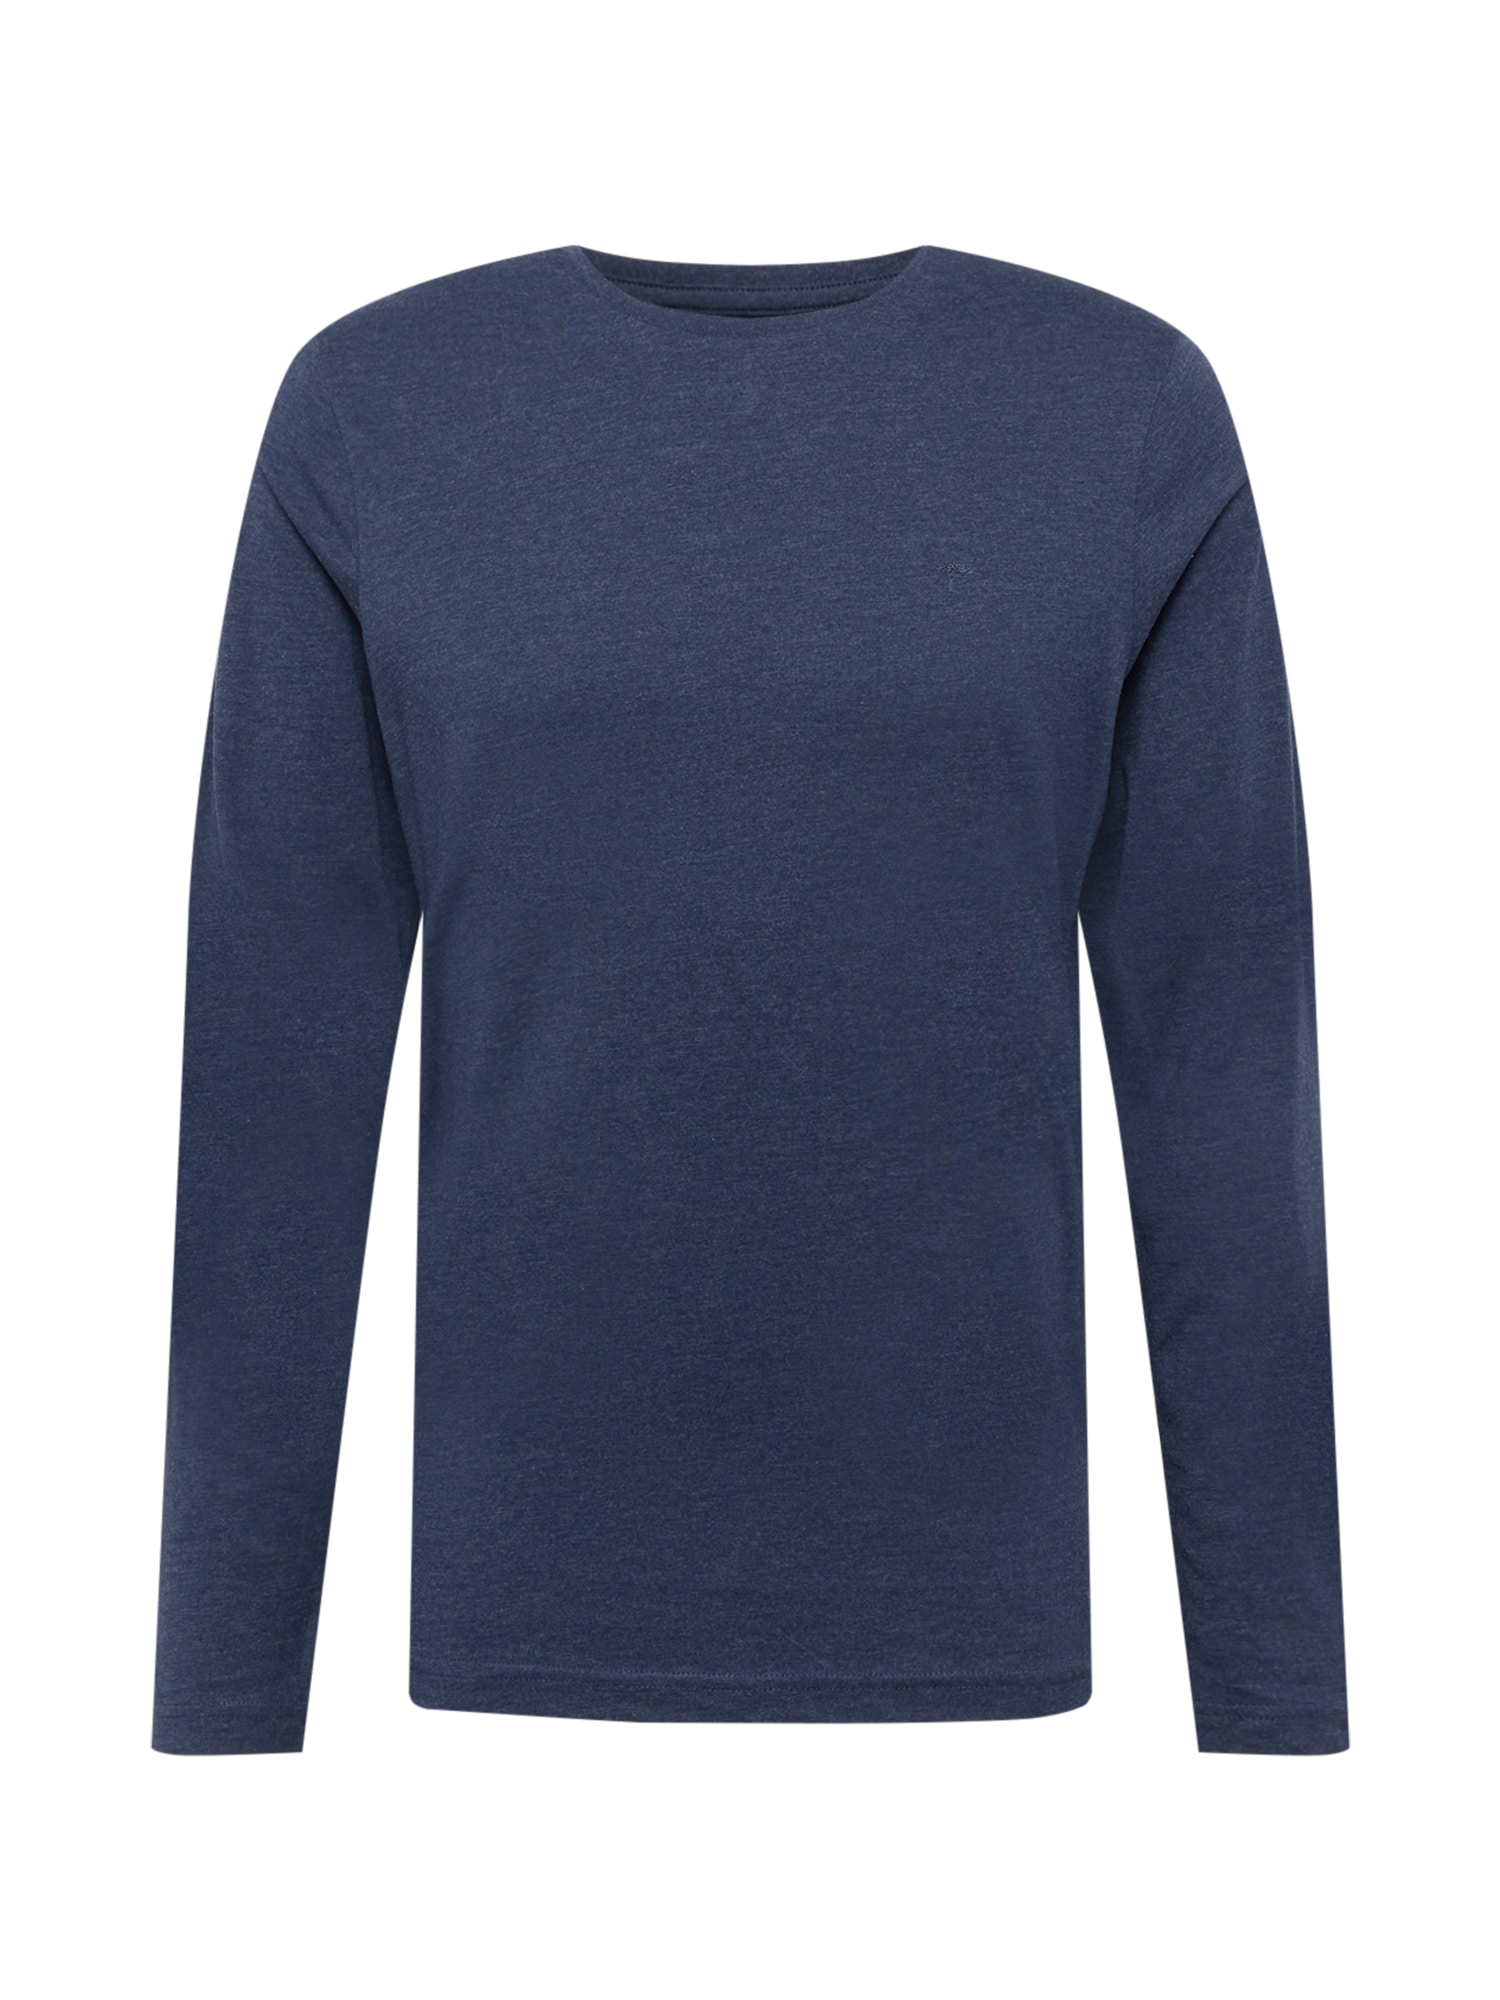 FYNCH-HATTON Marškinėliai tamsiai mėlyna jūros spalva